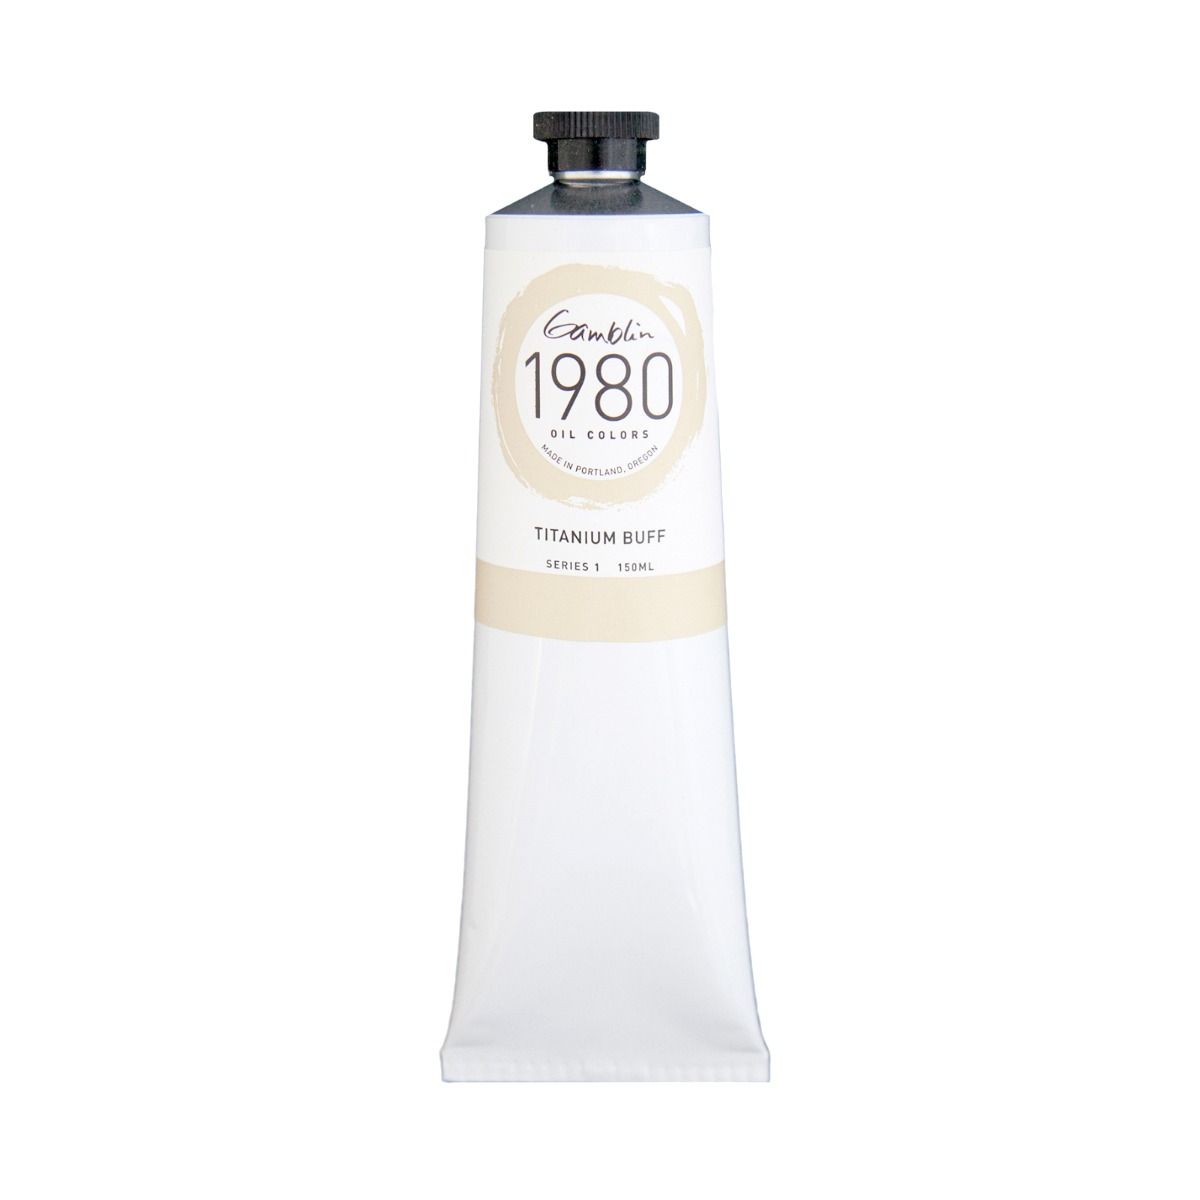 Gamblin 1980 Oils - Titanium Buff, 150 ml (5.07oz)